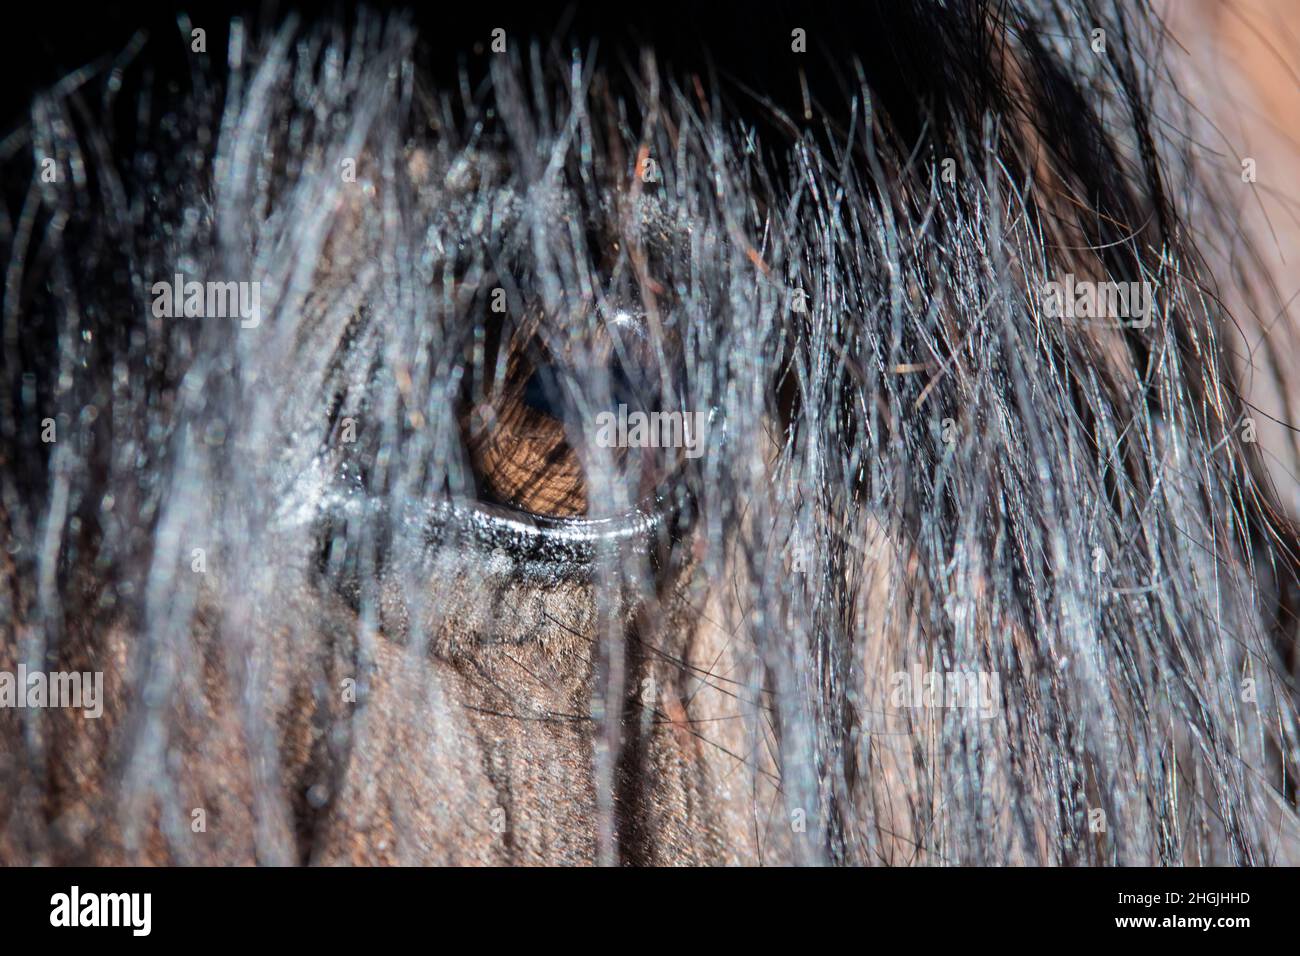 Nahaufnahme des Auges und der Mähne eines braunen spanischen Pferdes Stockfoto